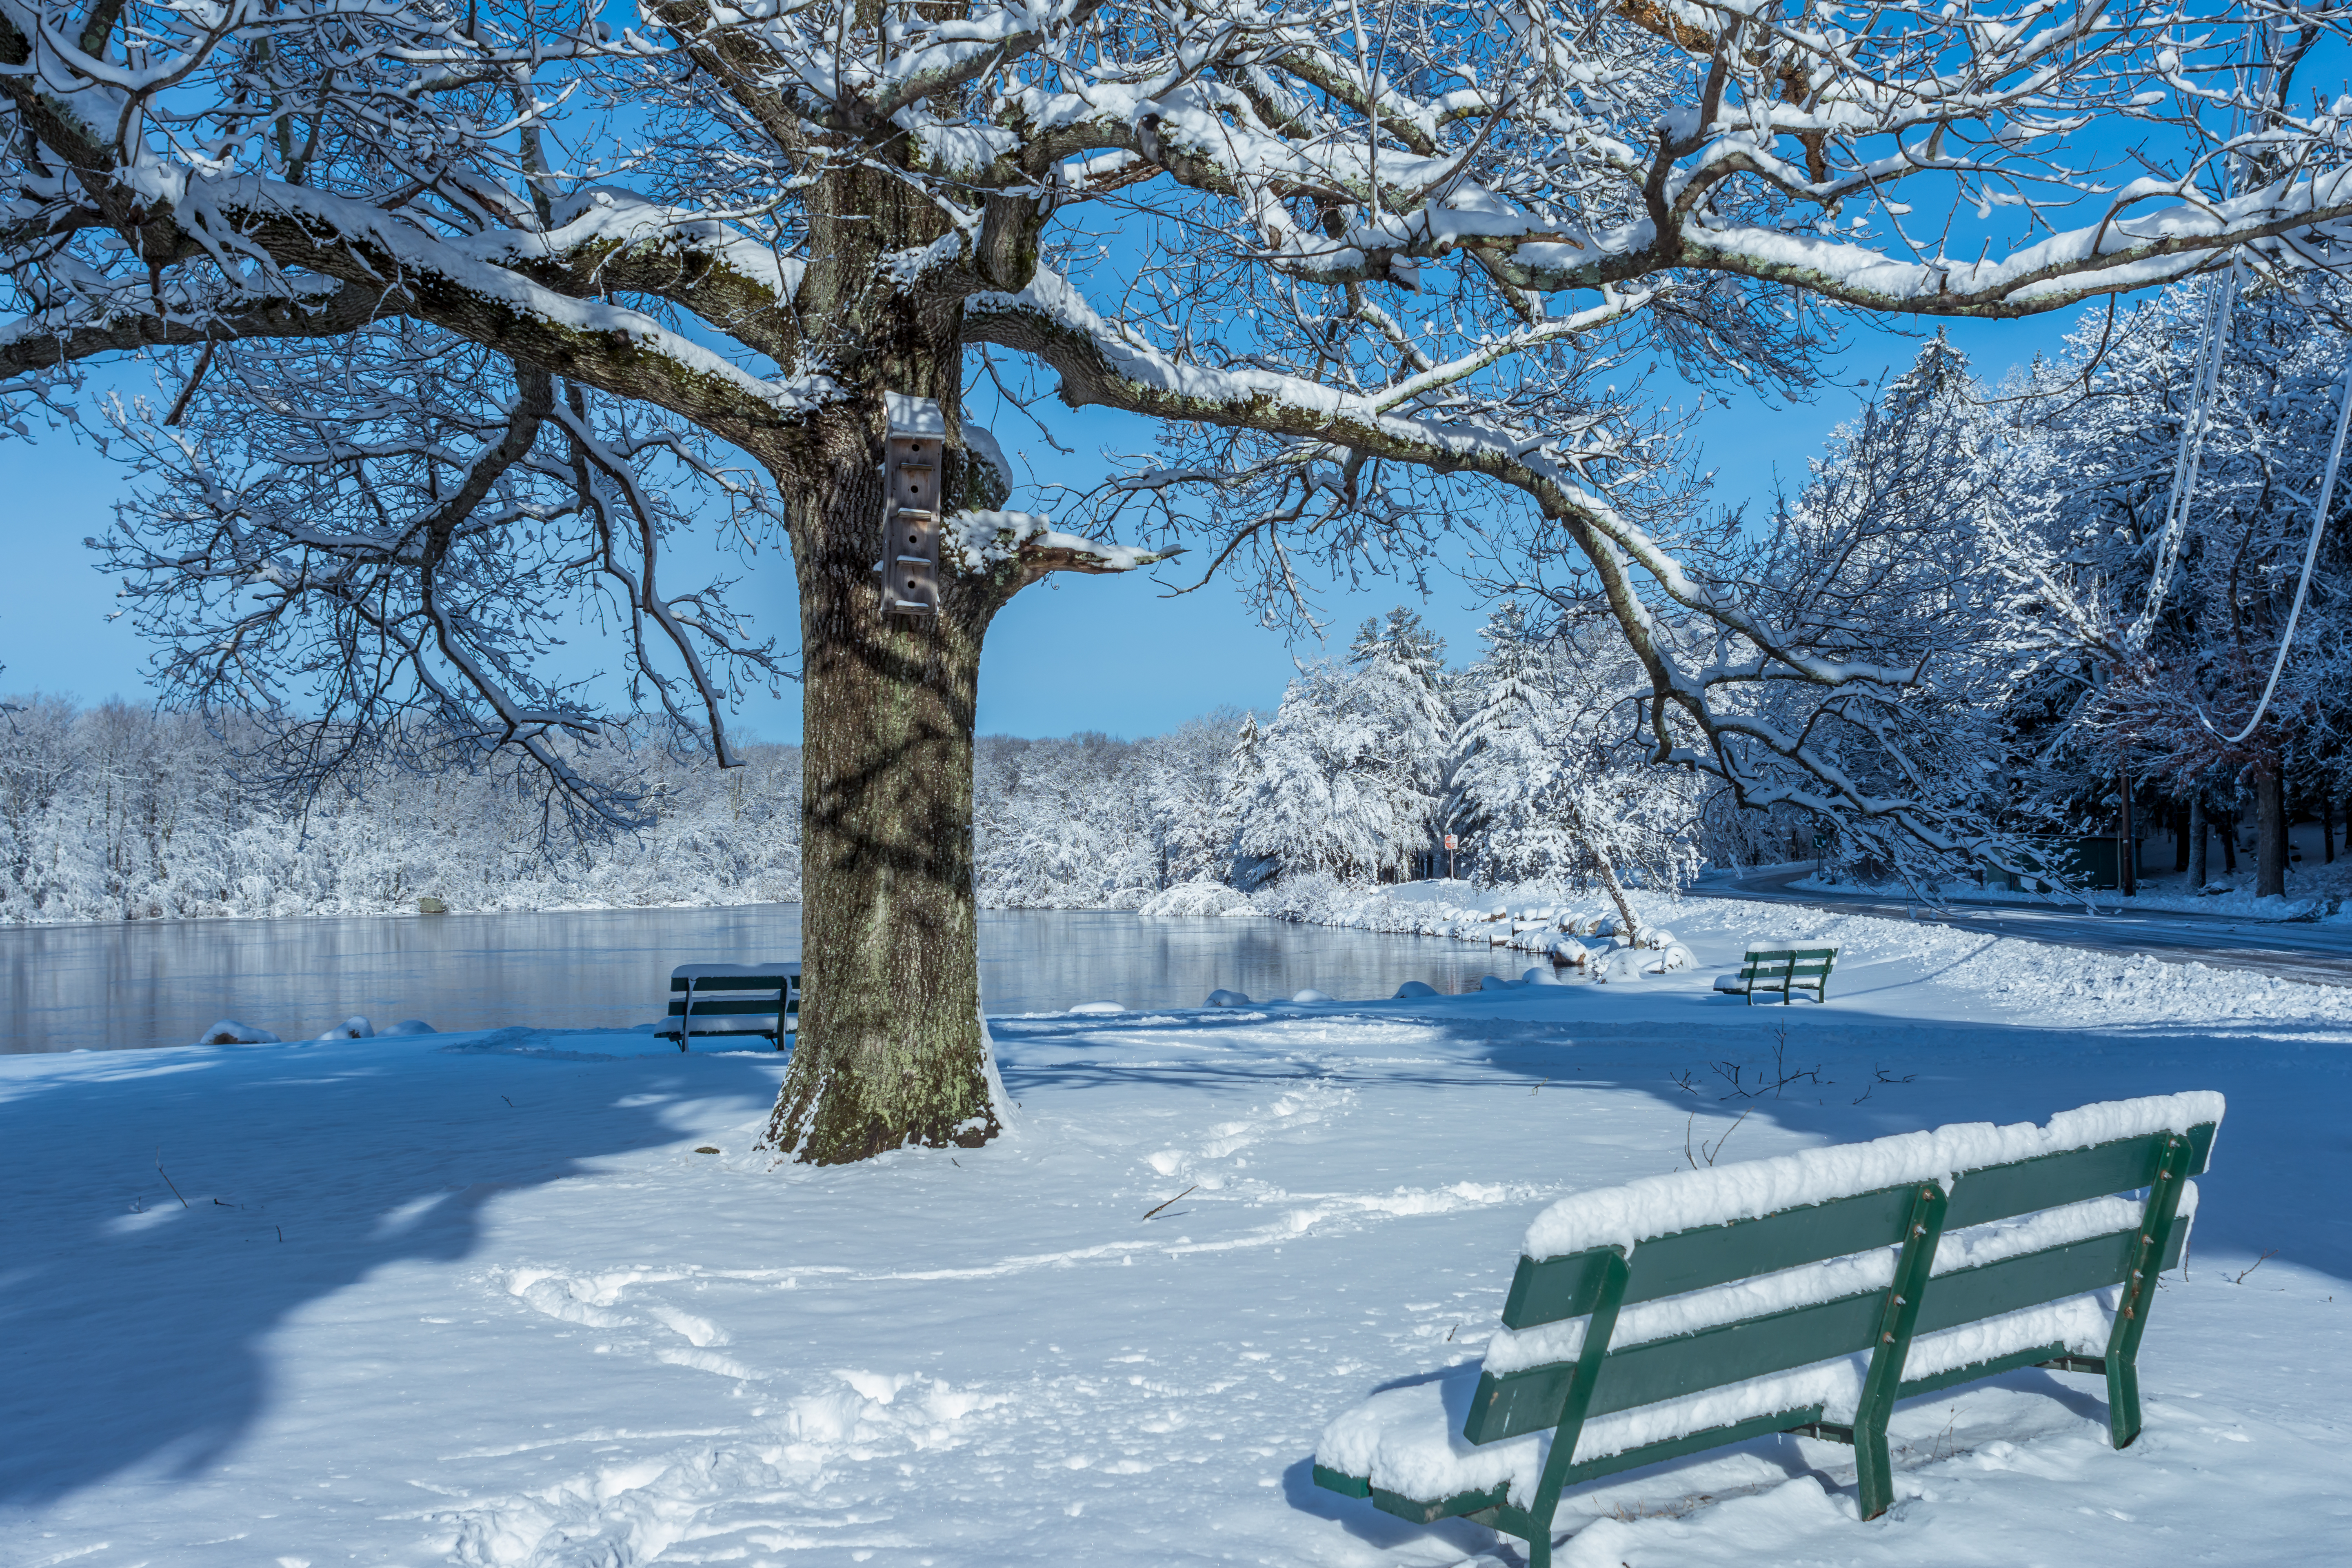 Скачать обои бесплатно Зима, Снег, Парк, Дерево, Земля, Скамейка, Пруд, Фотографии картинка на рабочий стол ПК